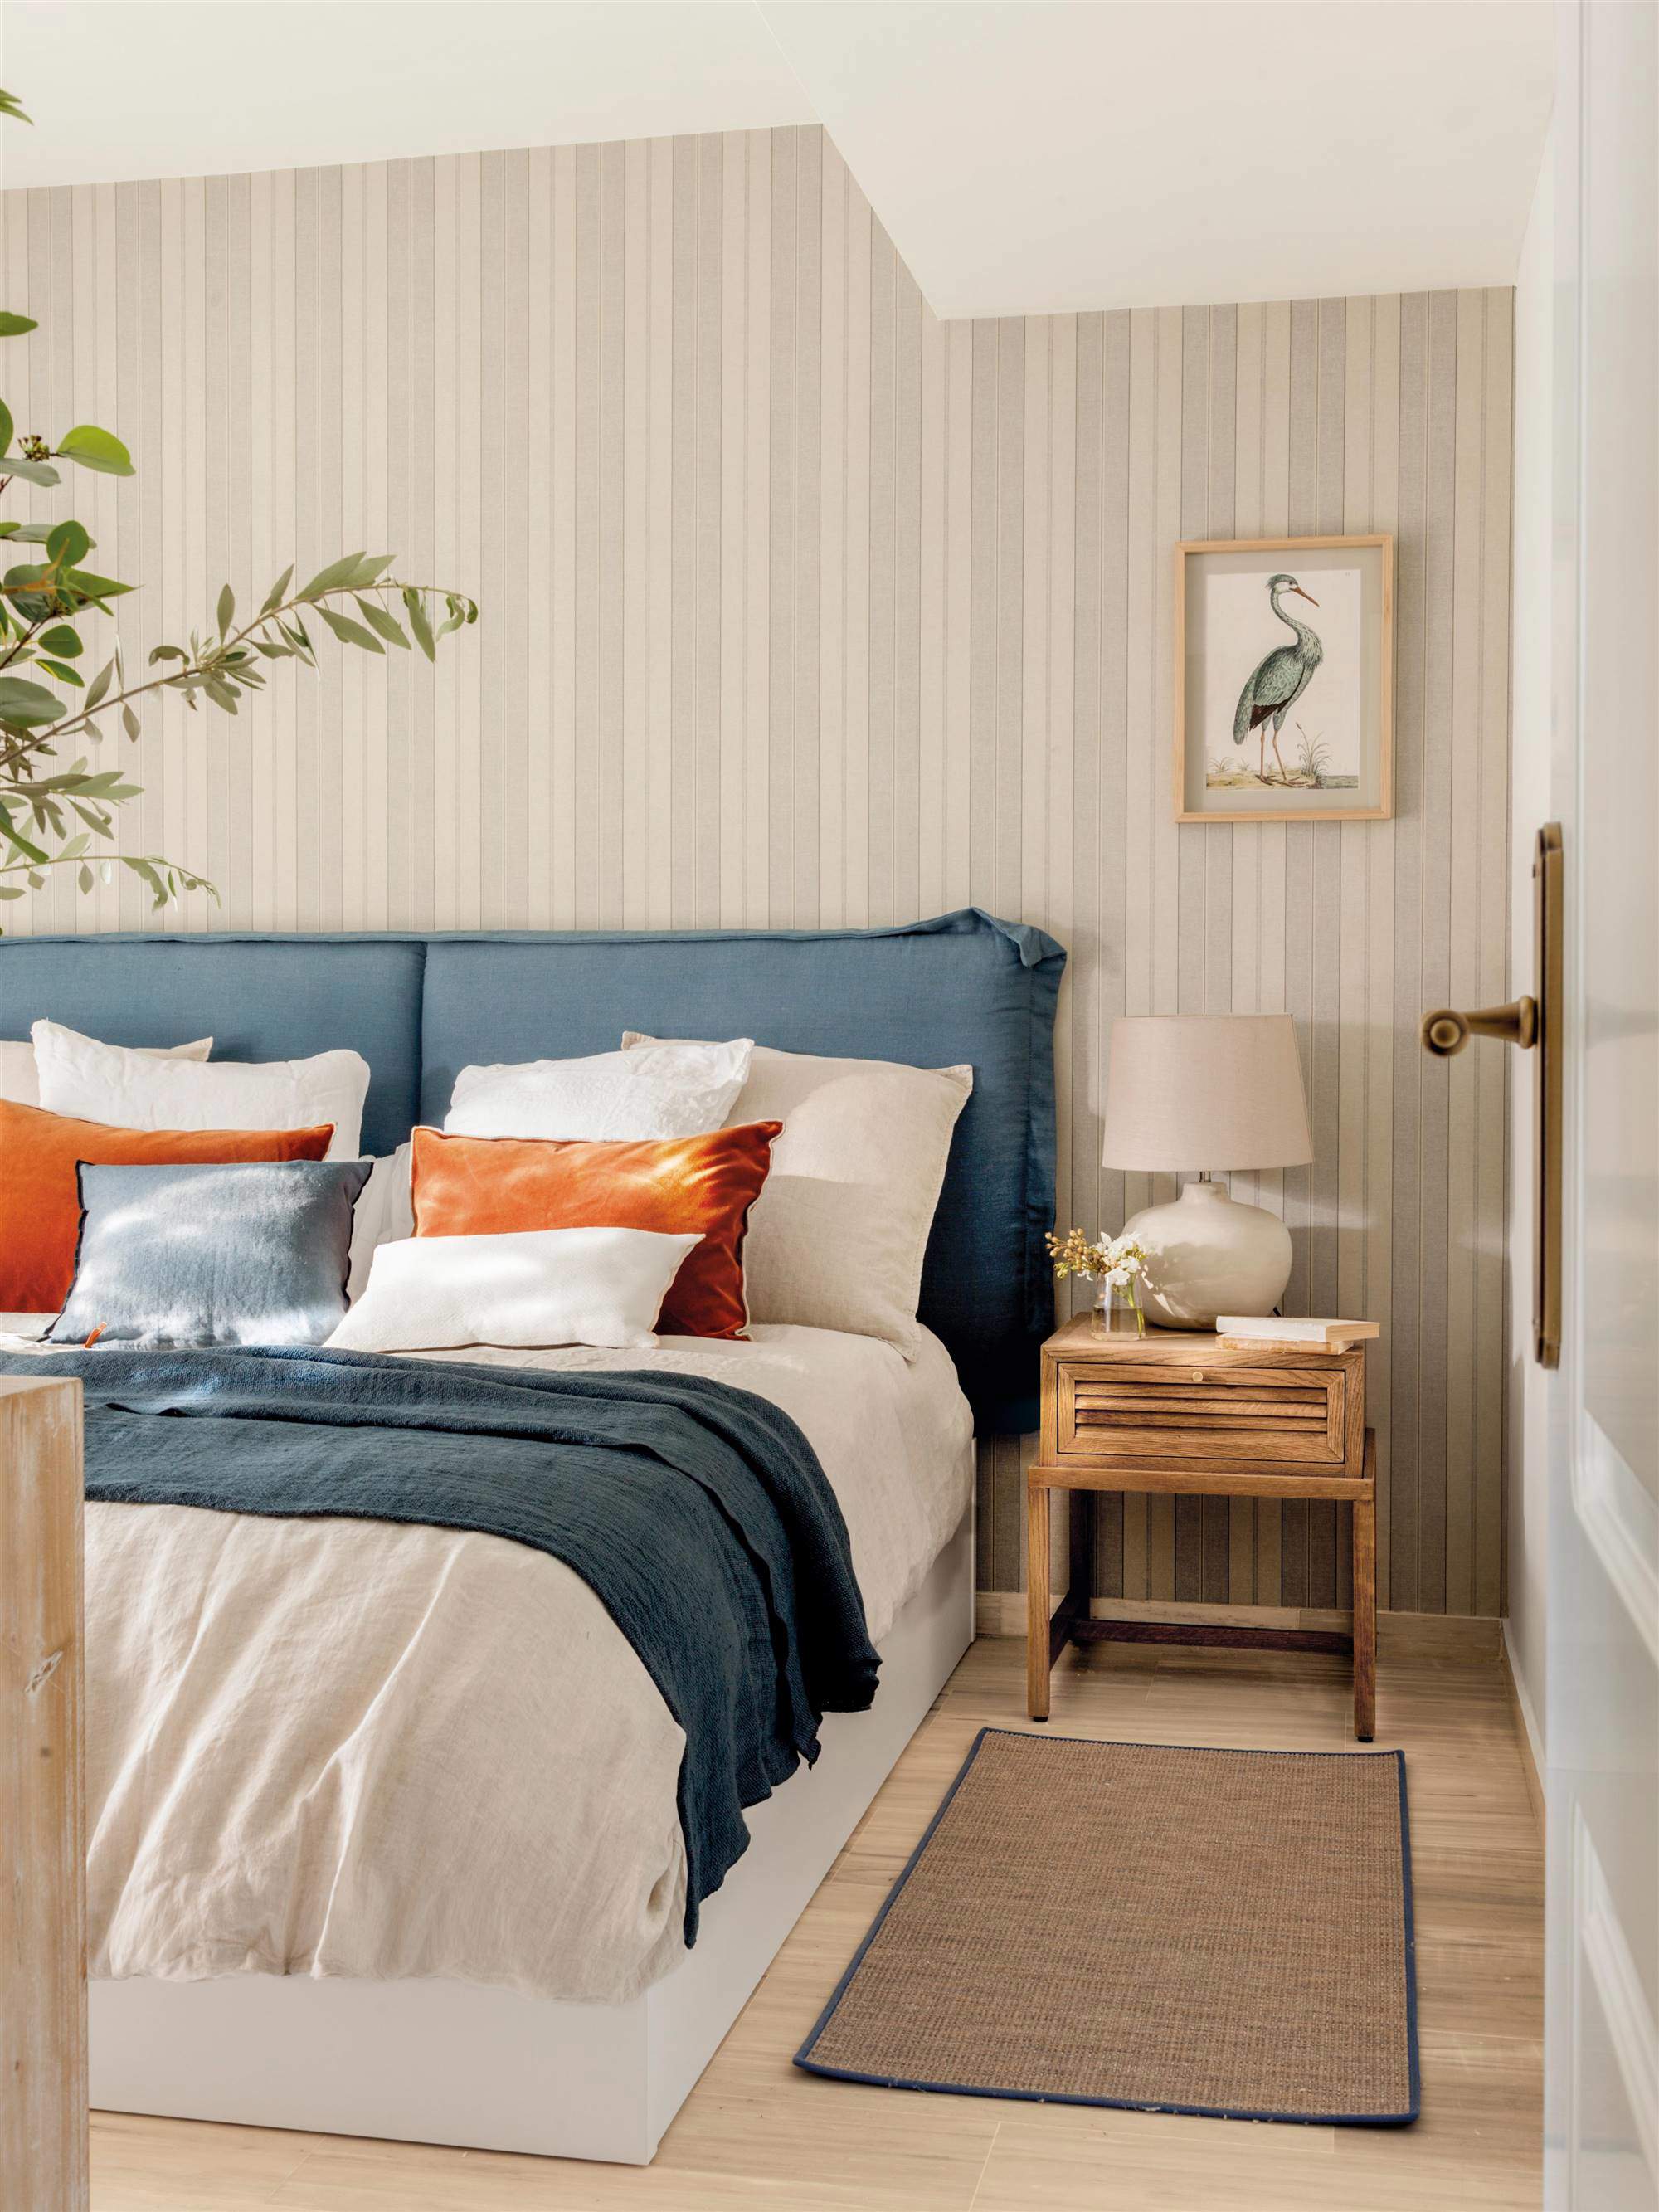 00542267 Dormitorio con cabecero tapizado en azul y papel pintado de rayas